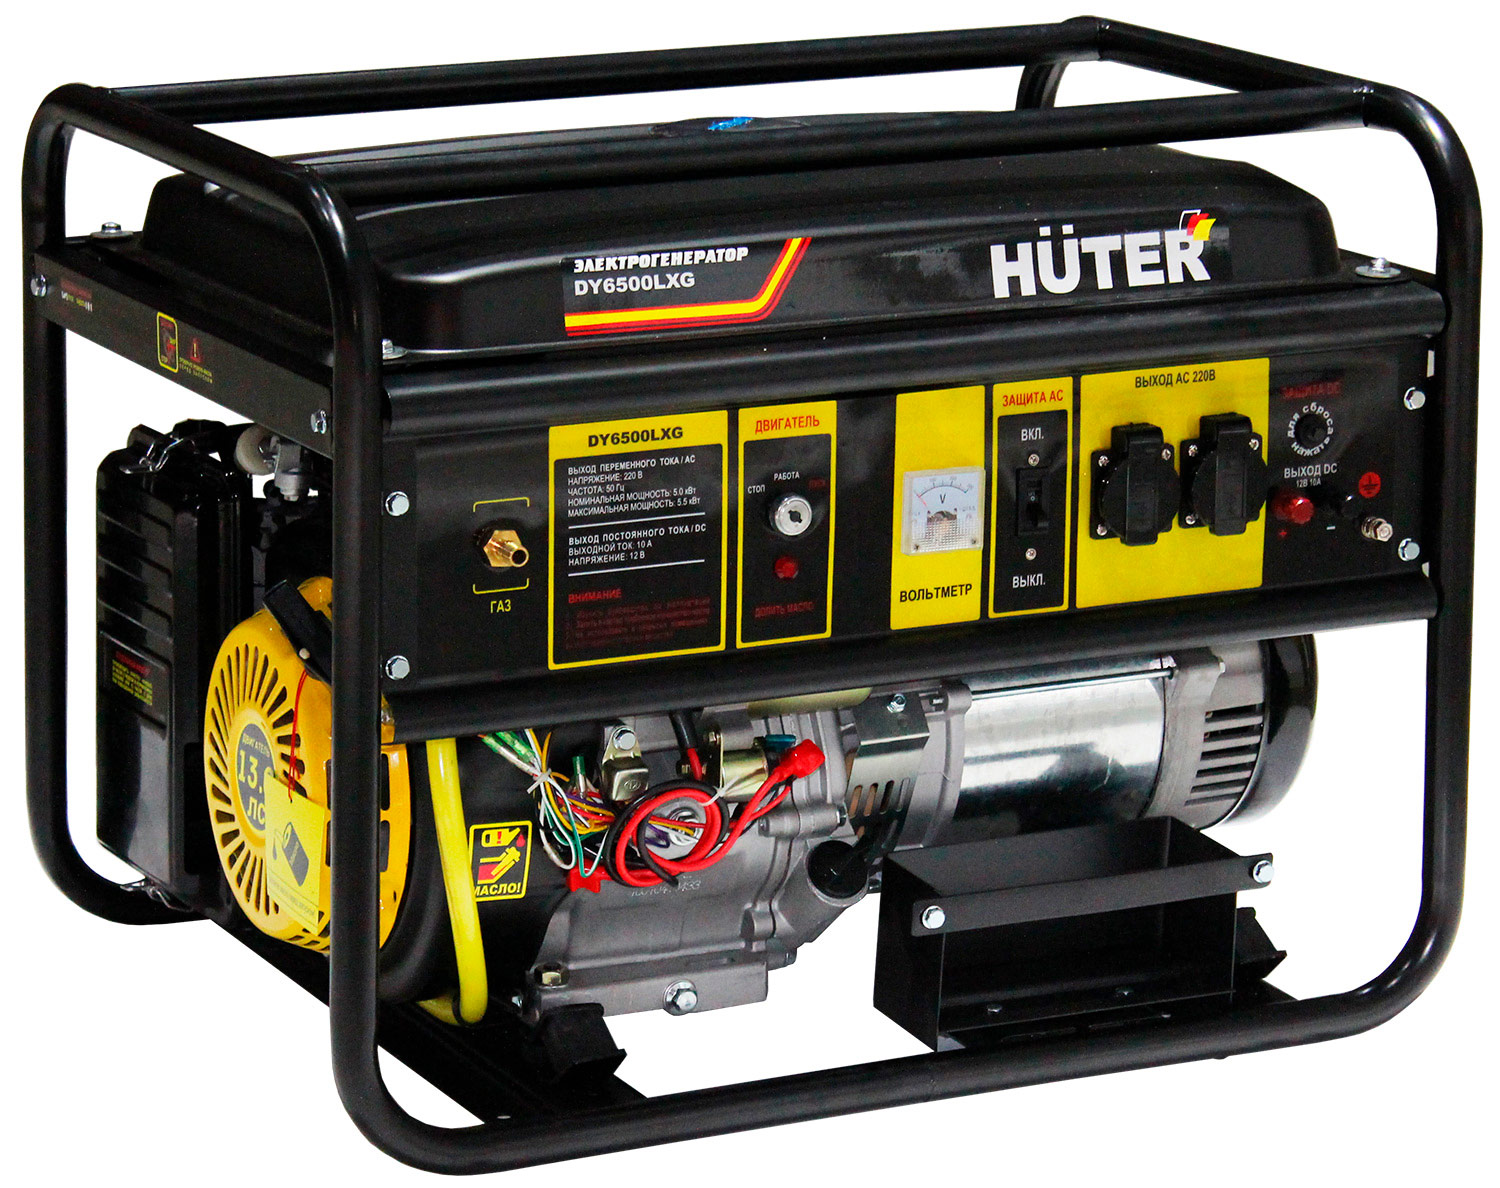 Электрический генератор и электростанция Huter DY6500LXG 64/1/32 электрический генератор и электростанция huter dy6500l